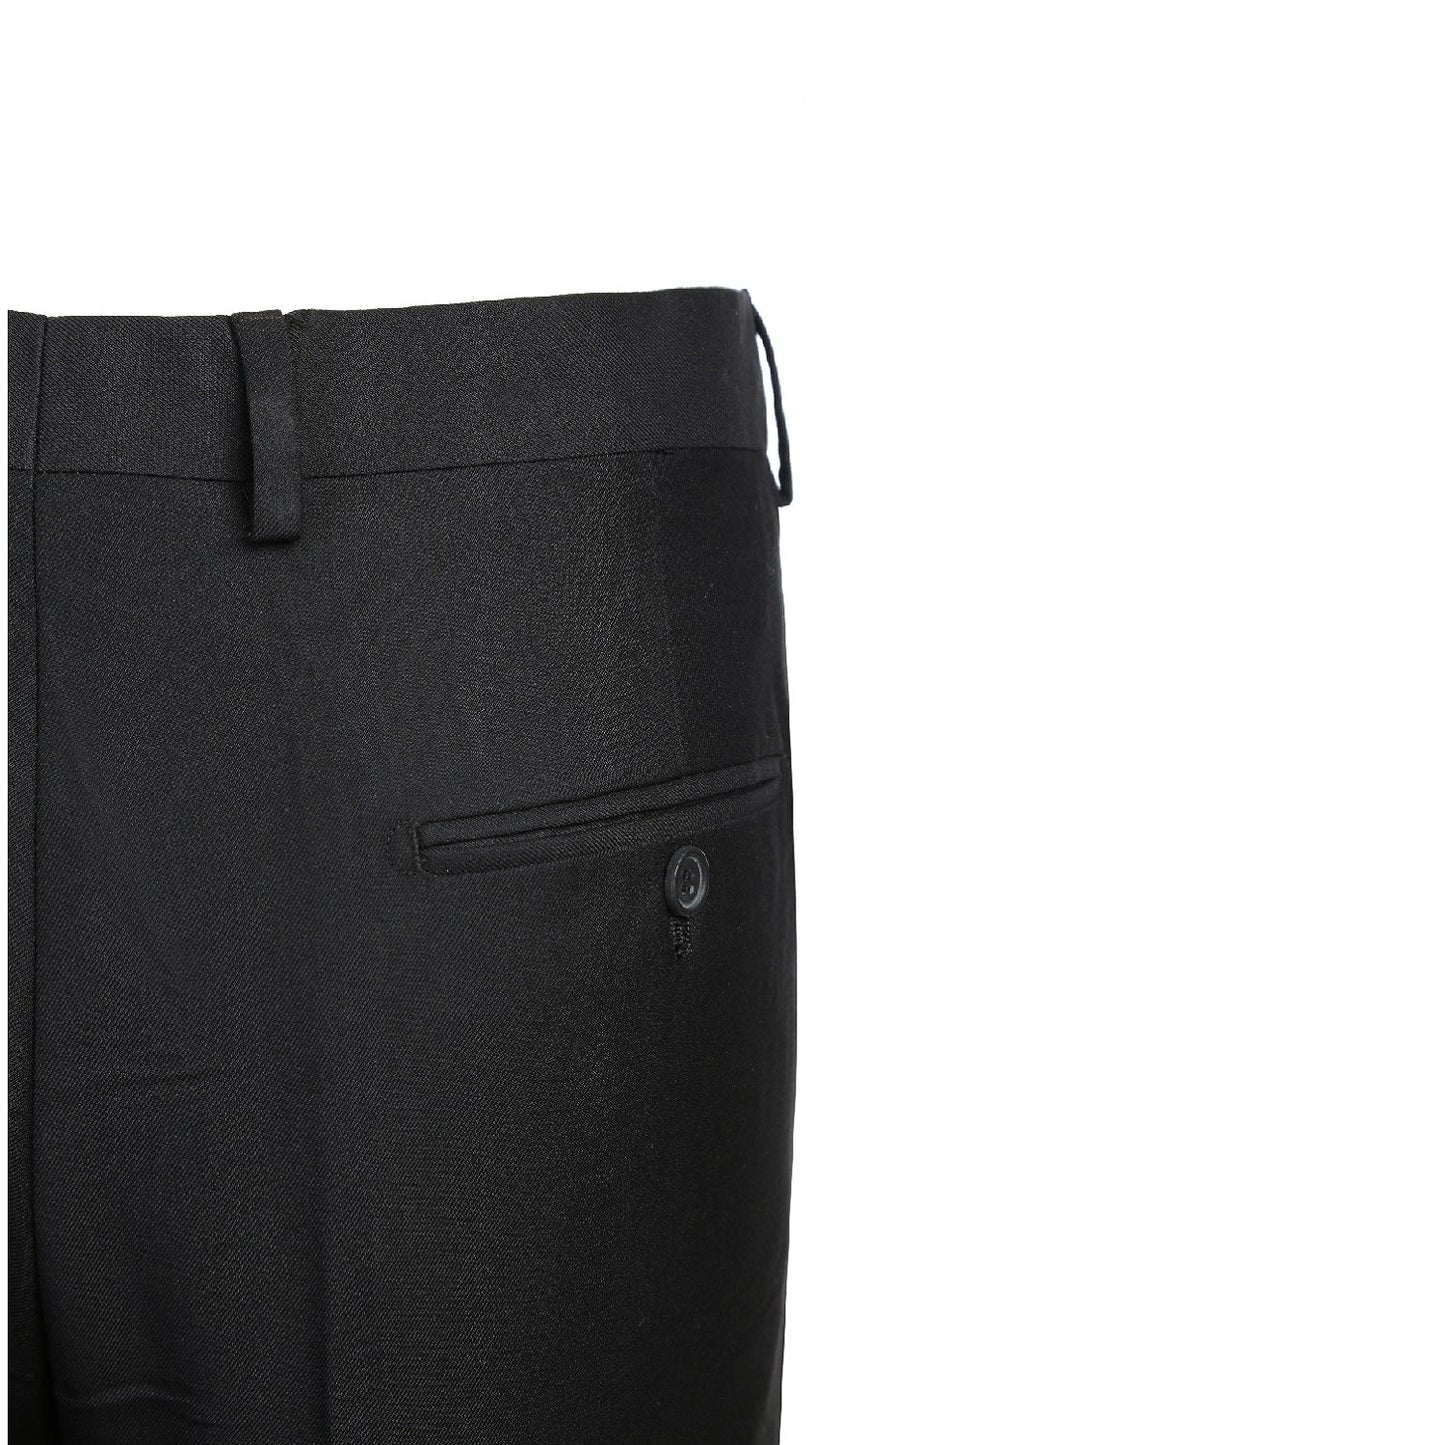 201-1 Classic Fit Men's Flat Front Suit Separate Black Pants